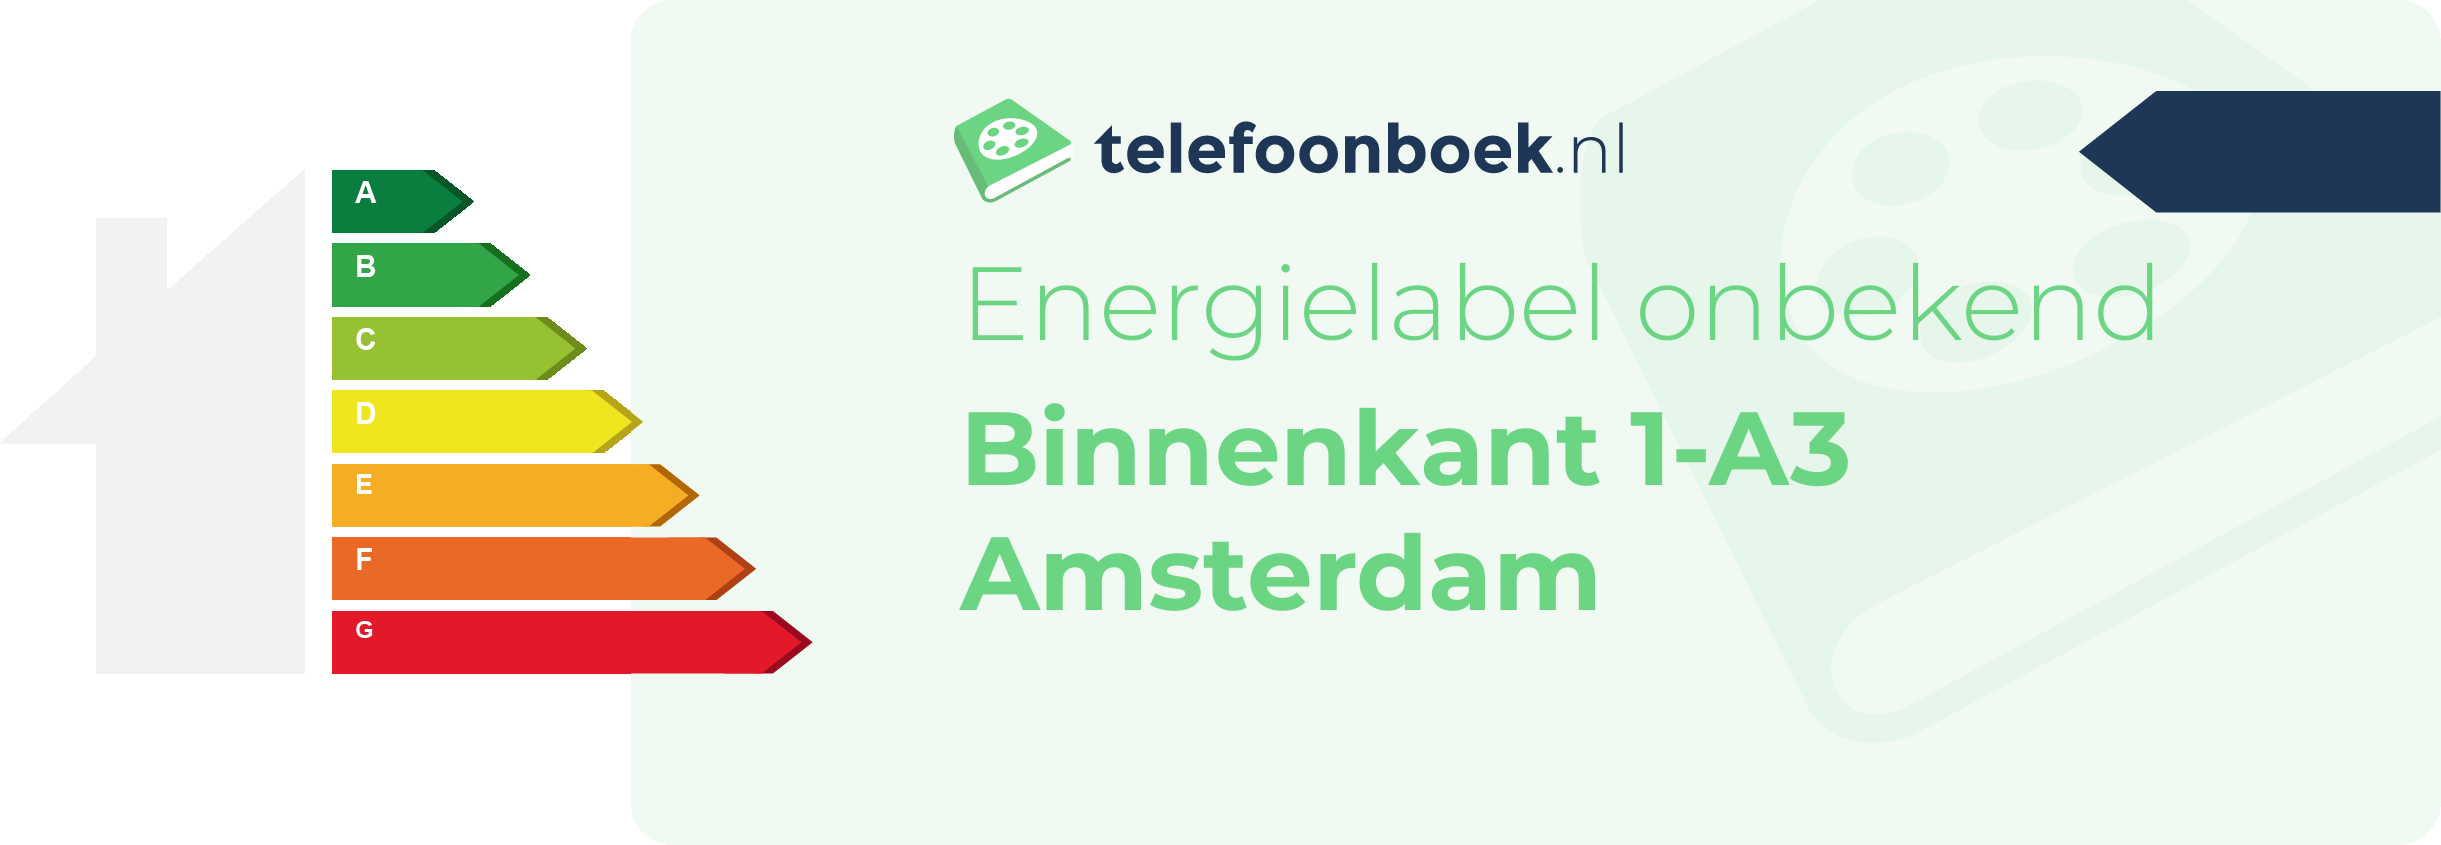 Energielabel Binnenkant 1-A3 Amsterdam